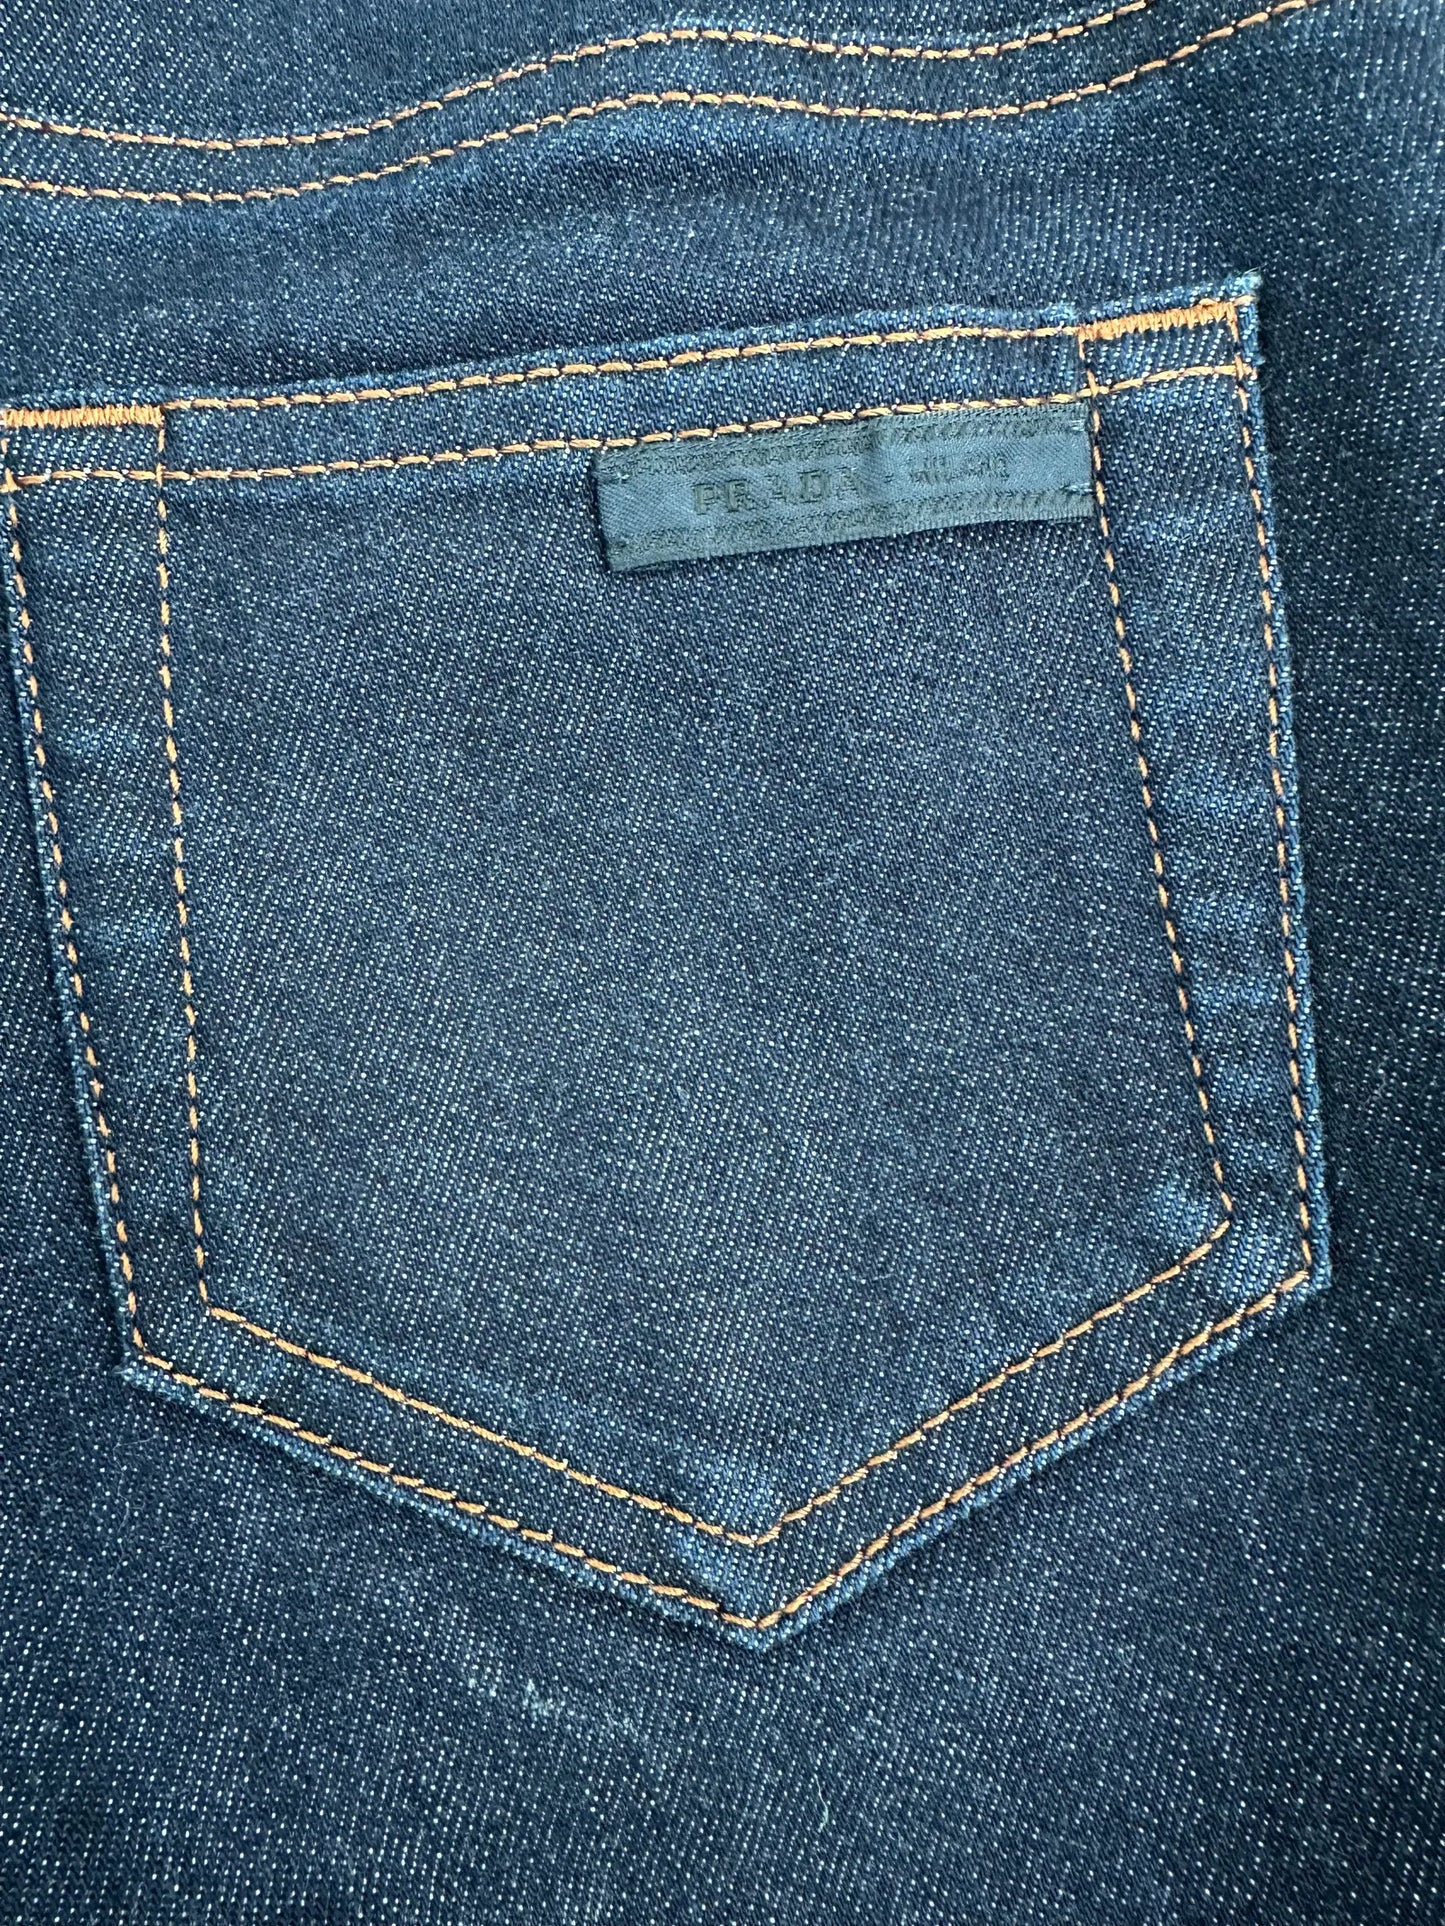 Prada-jeans NWOT